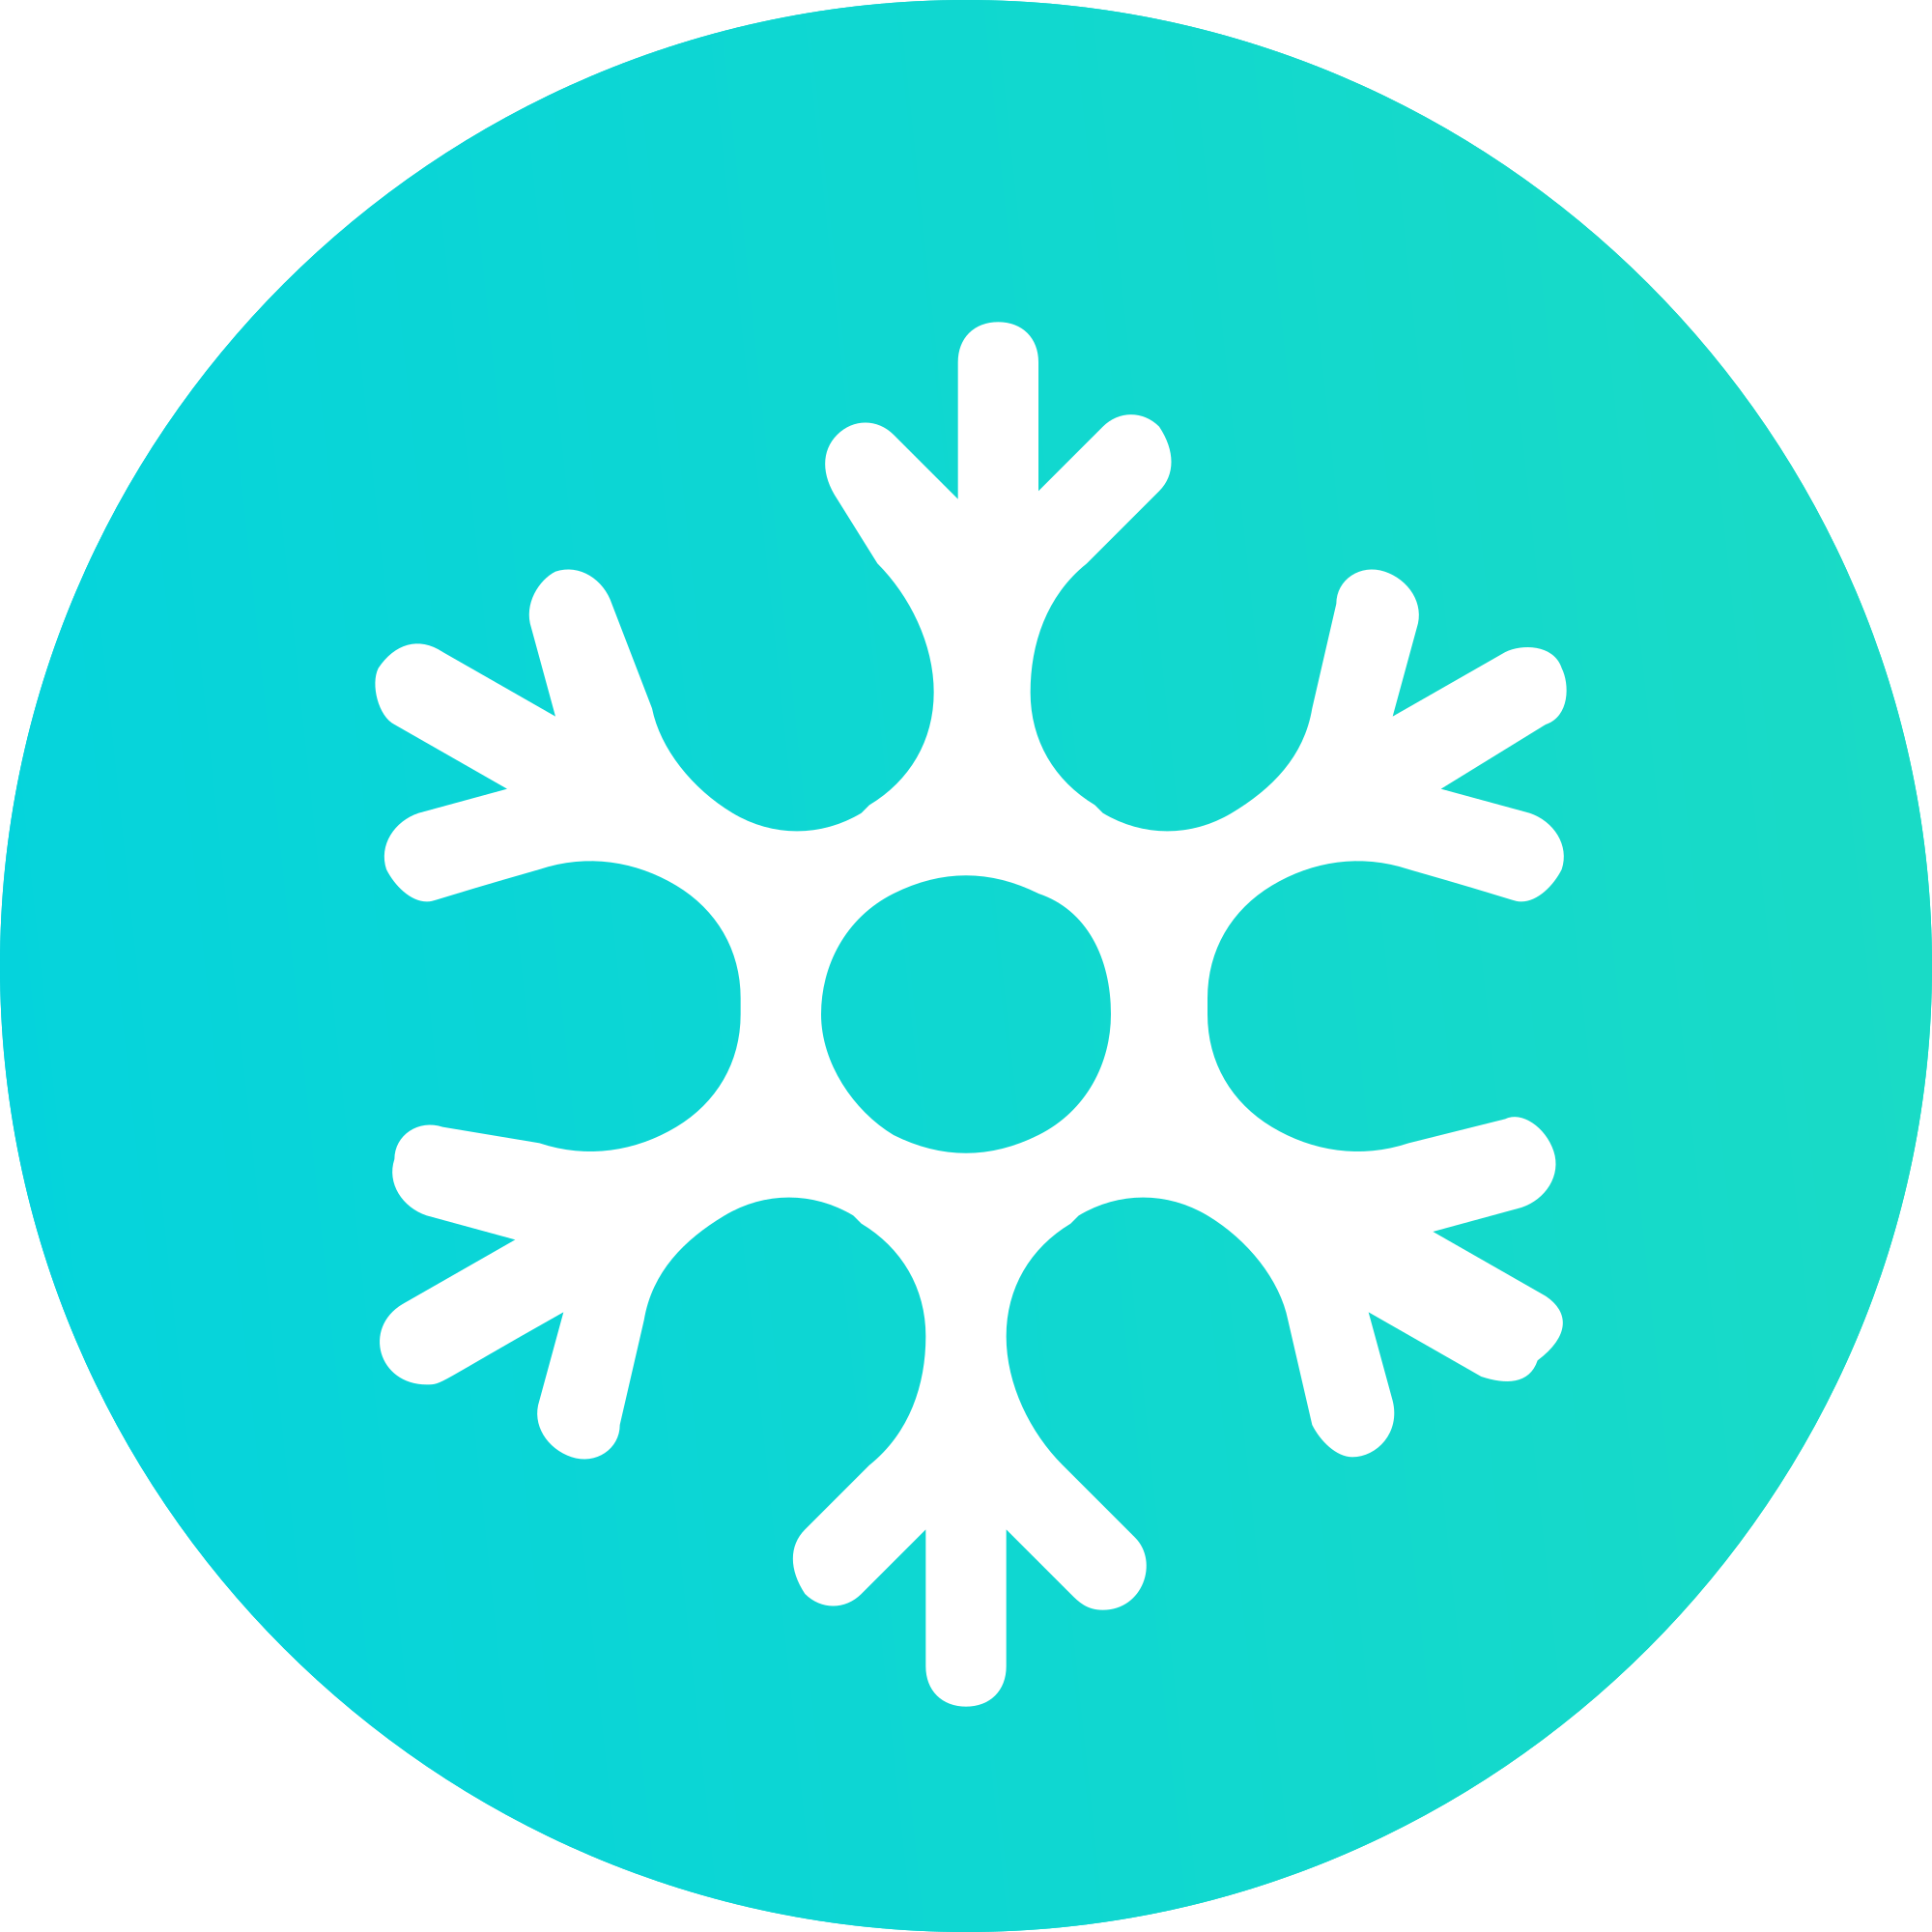 لوگو ارز SnowSwap